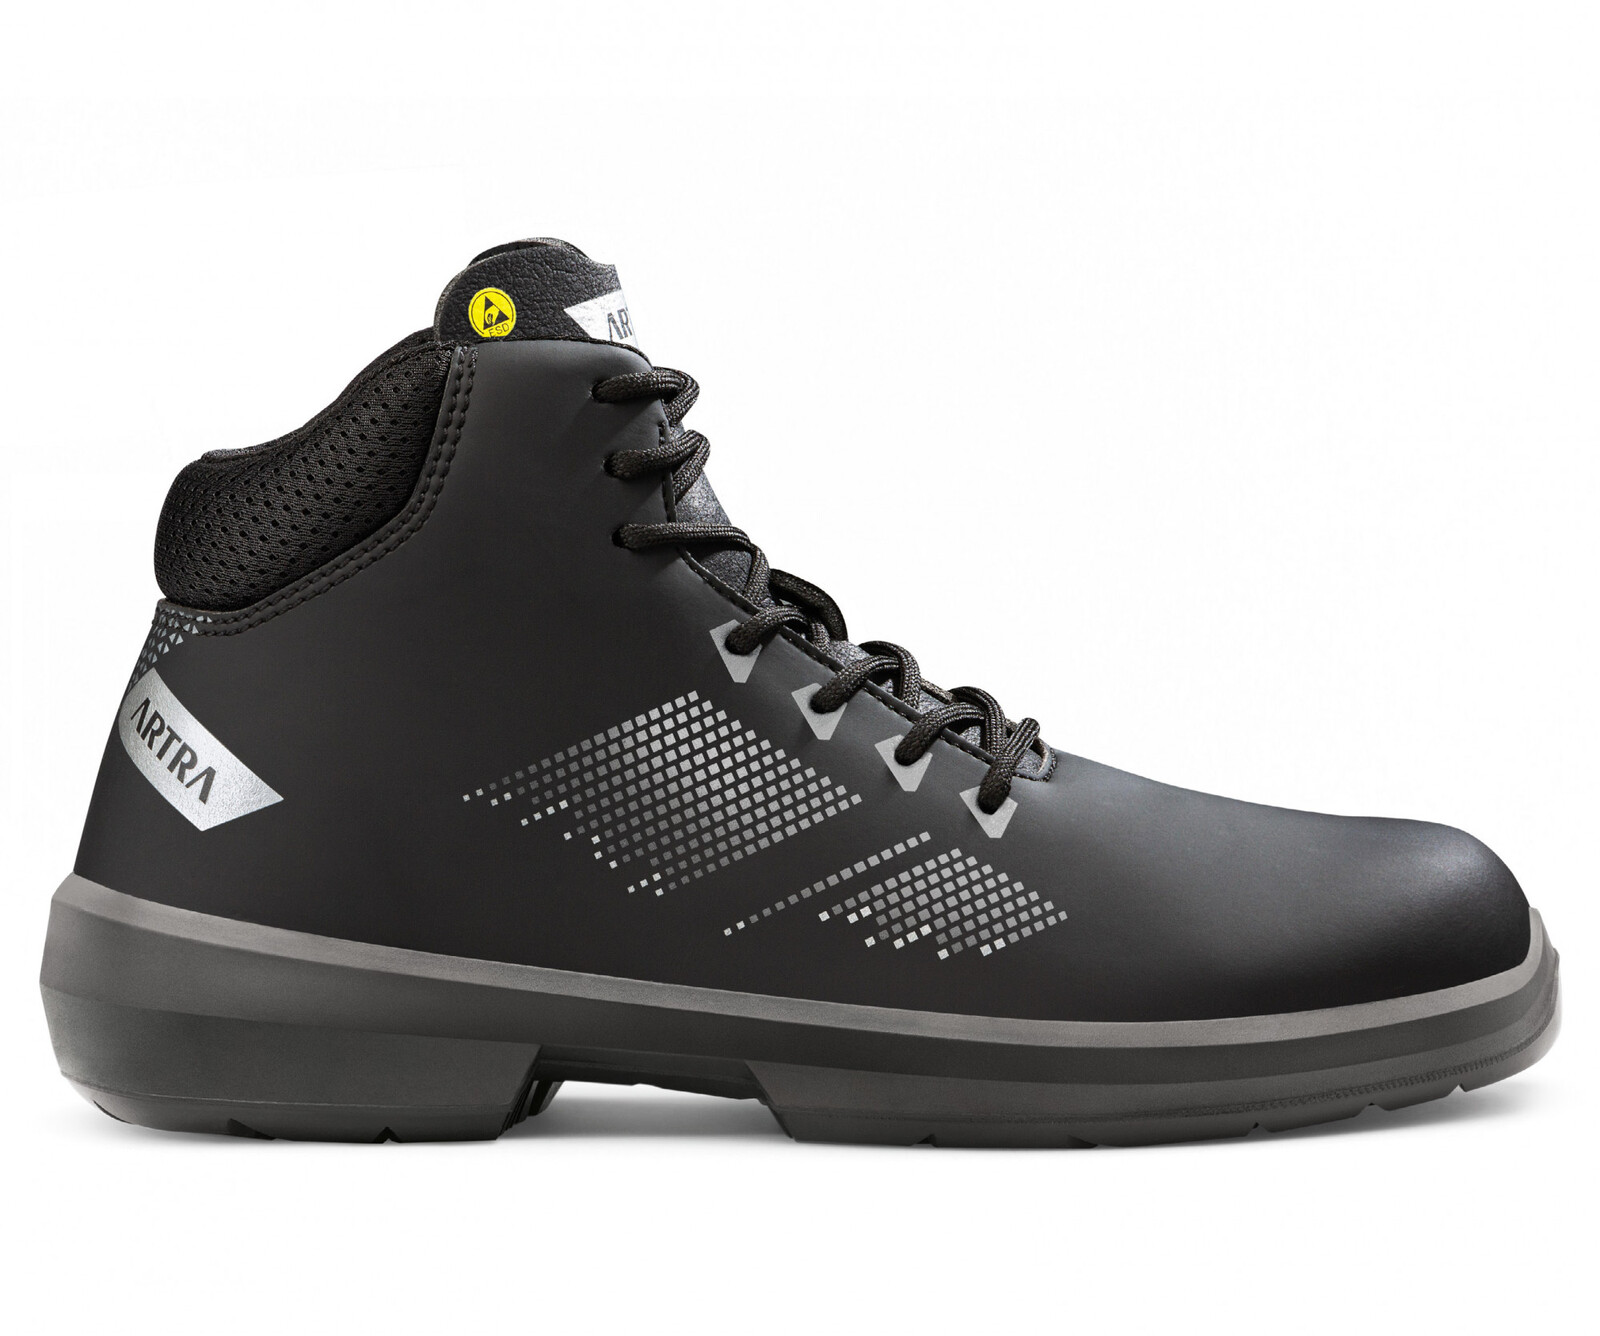 Zimná bezpečnostná členková obuv Artra Arrival 855 676560 S3 CI SRC ESD MF - veľkosť: 38, farba: čierna/sivá